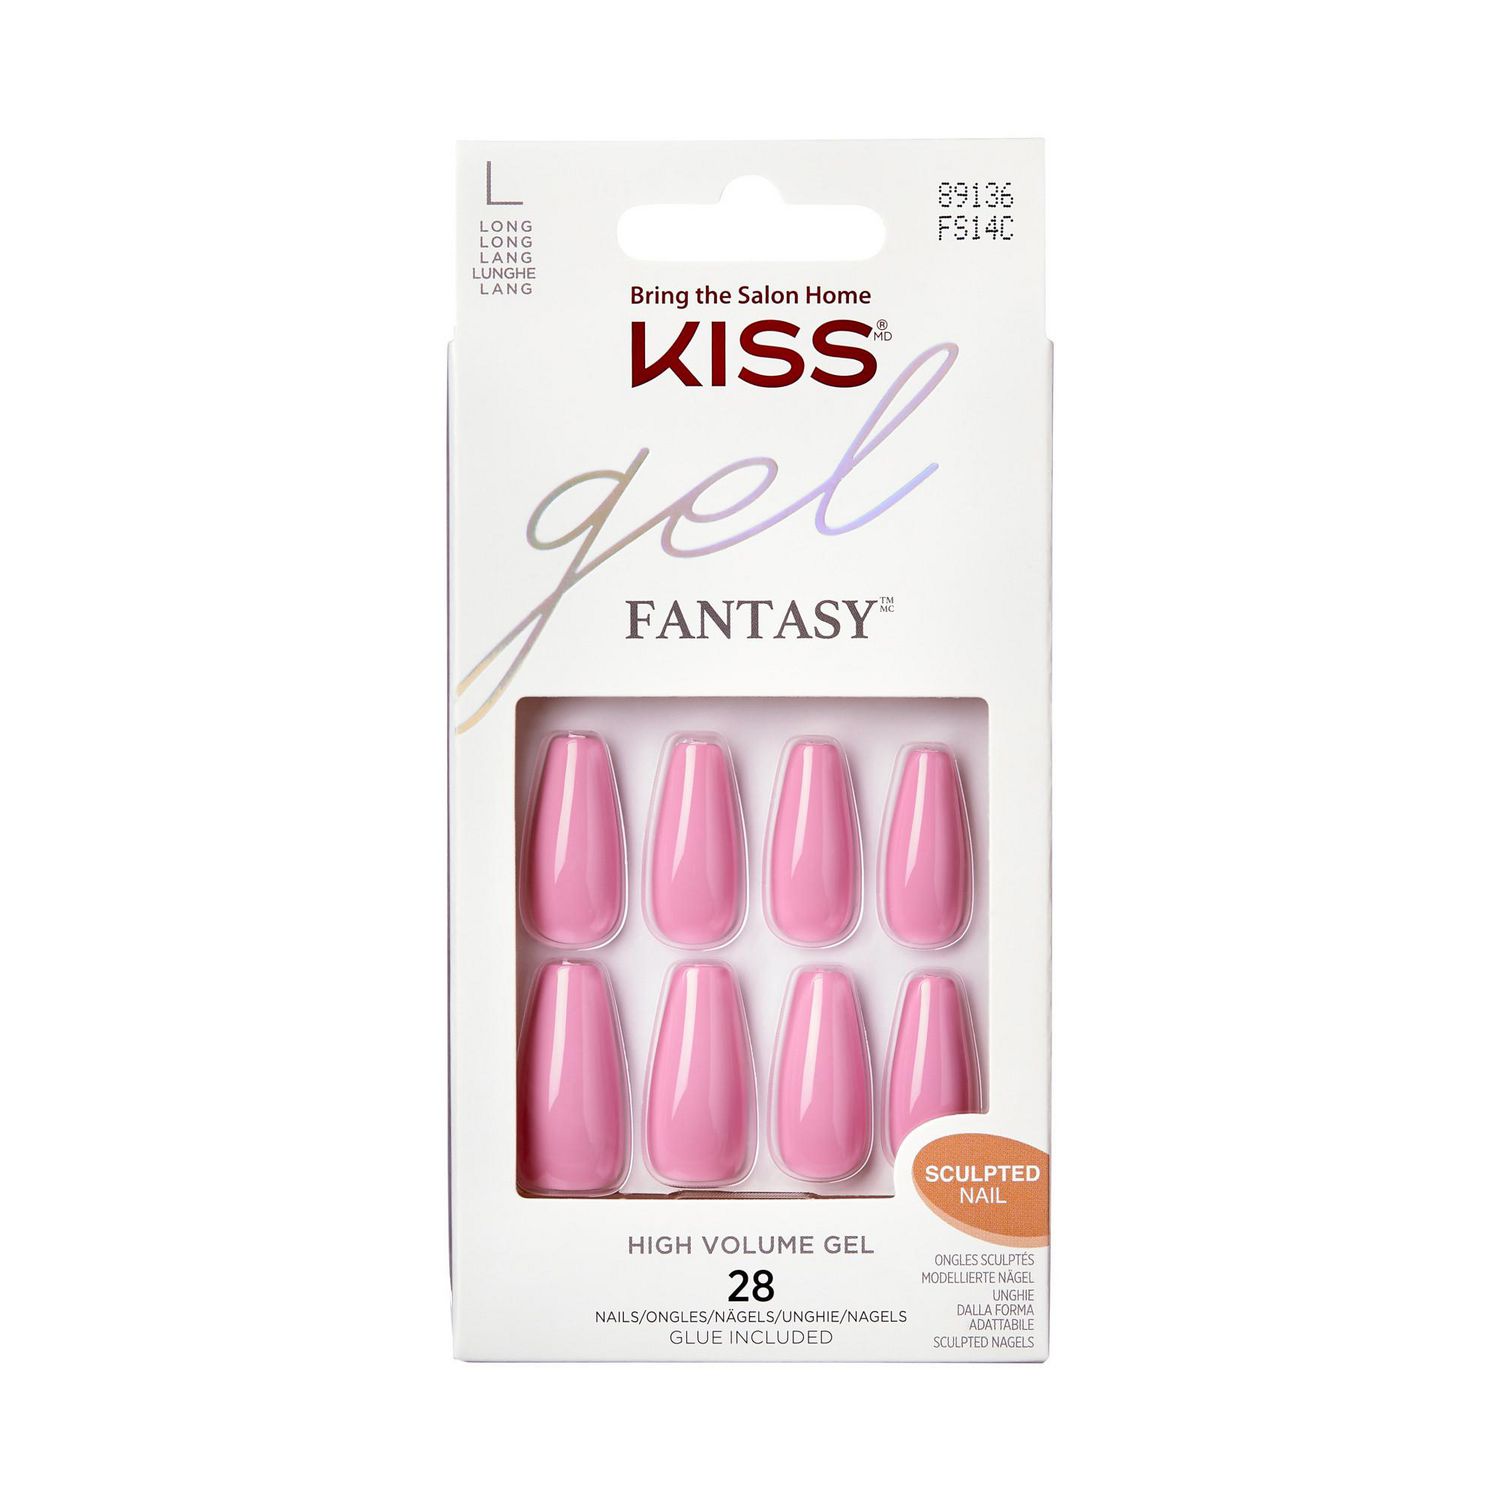 KISS Gel Fantasy Countless Times Fake Nails, 28 Count, Long, Gel nails. 